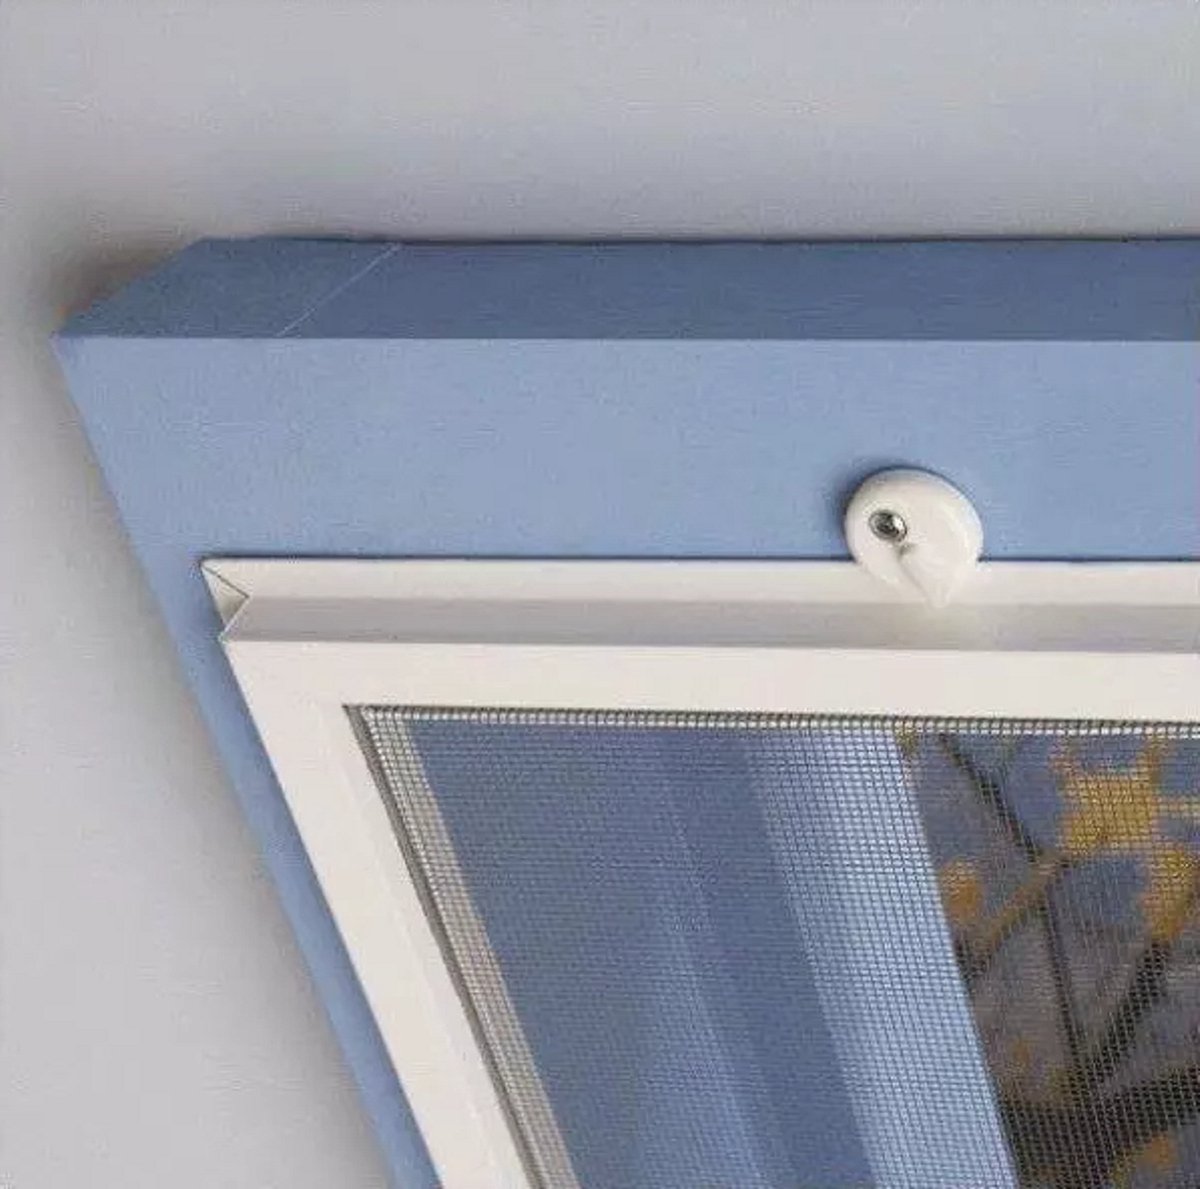 Bouwpakket voorzethor - grijs gaas - wit - maximum 50 x 100 cm [kleiner te maken] - inzethor - inclusief bevestiging - Voor naar buiten draaiende ramen